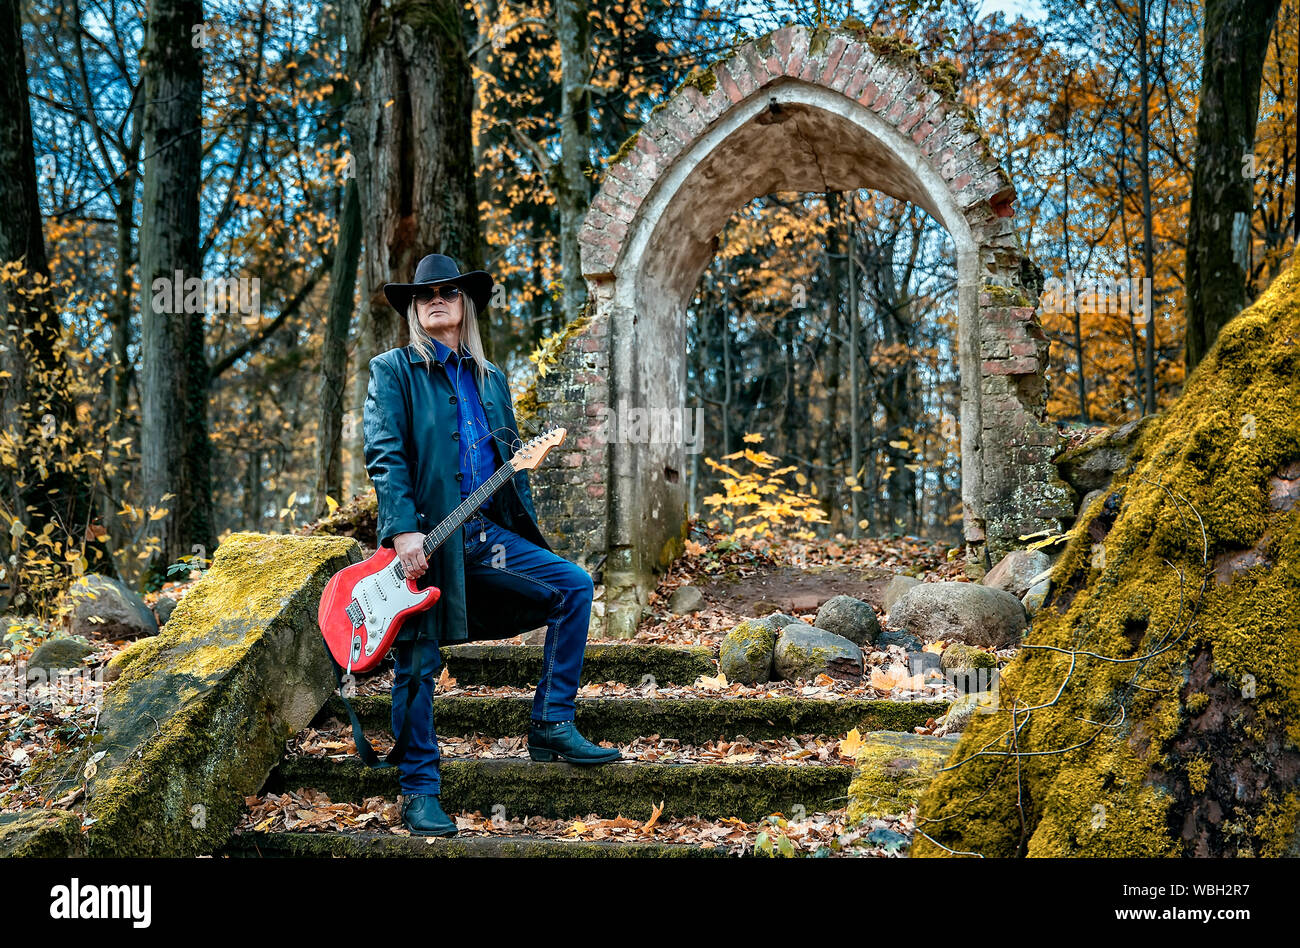 Personnes âgées l'homme aux cheveux longs dans un manteau de cuir, chapeau, lunettes de soleil et un jean debout avec une guitare électrique dans une sombre forêt près d'une chapelle en ruine Banque D'Images